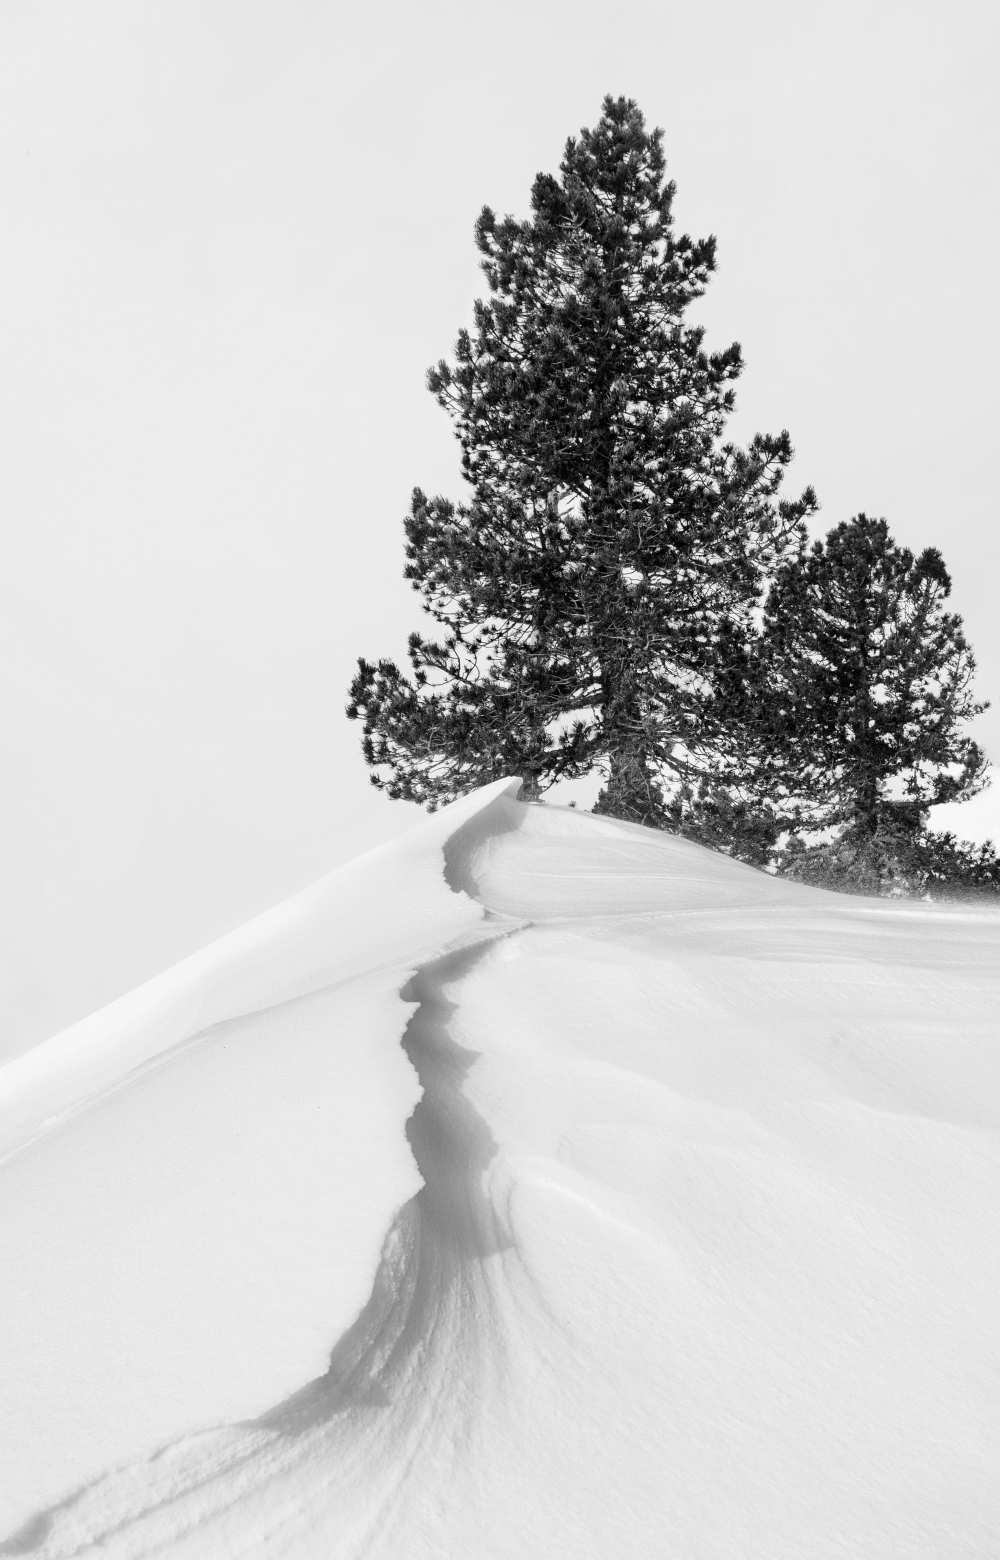 Titre de l‘image : Rodrigo Núñez Buj - À propos de la neige et des formes